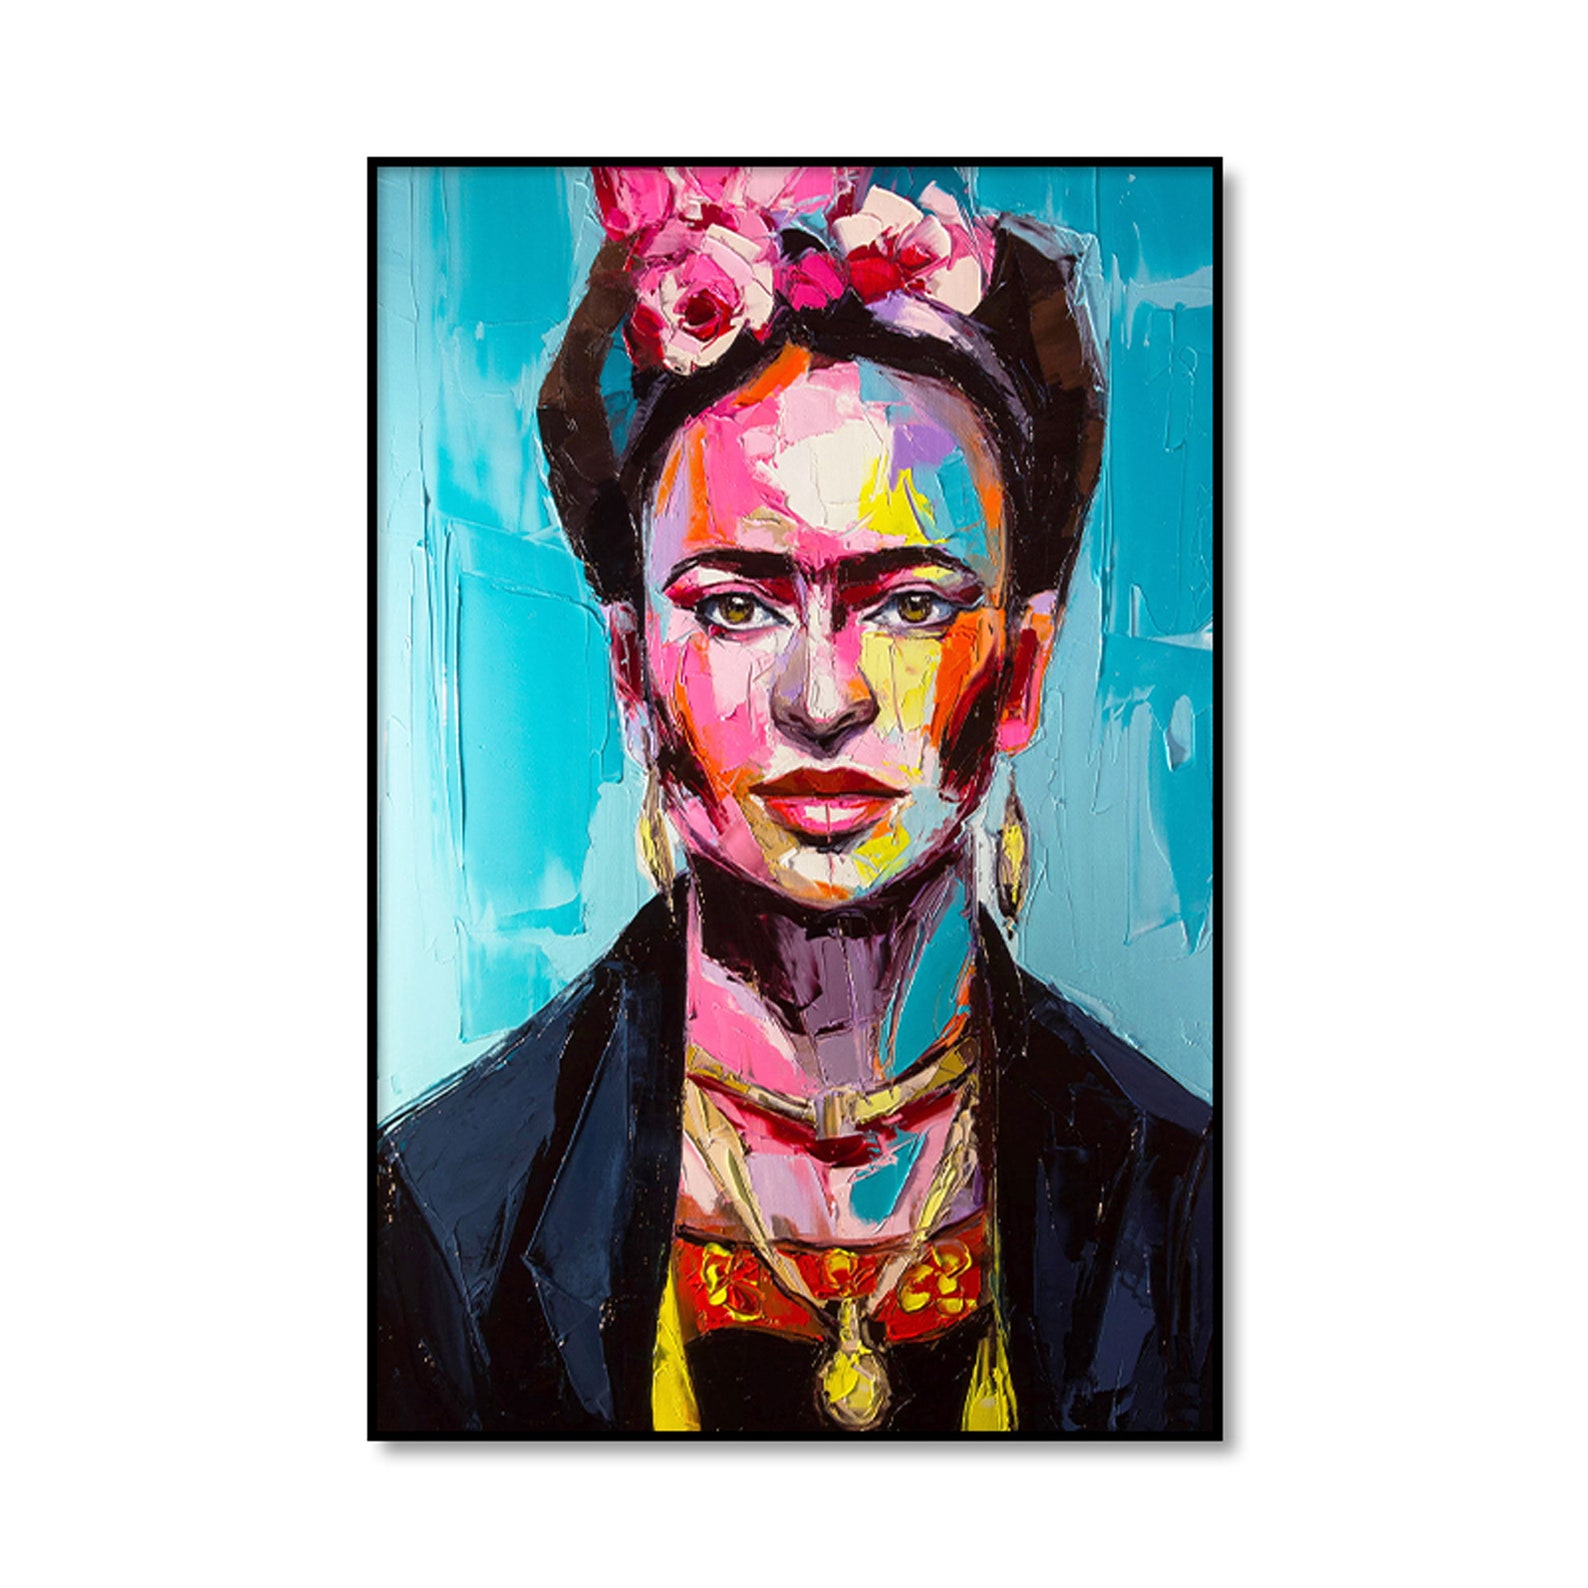 Frida Kahlo Poster Feminist Artwork Frida Kahlo Portrait | Etsy